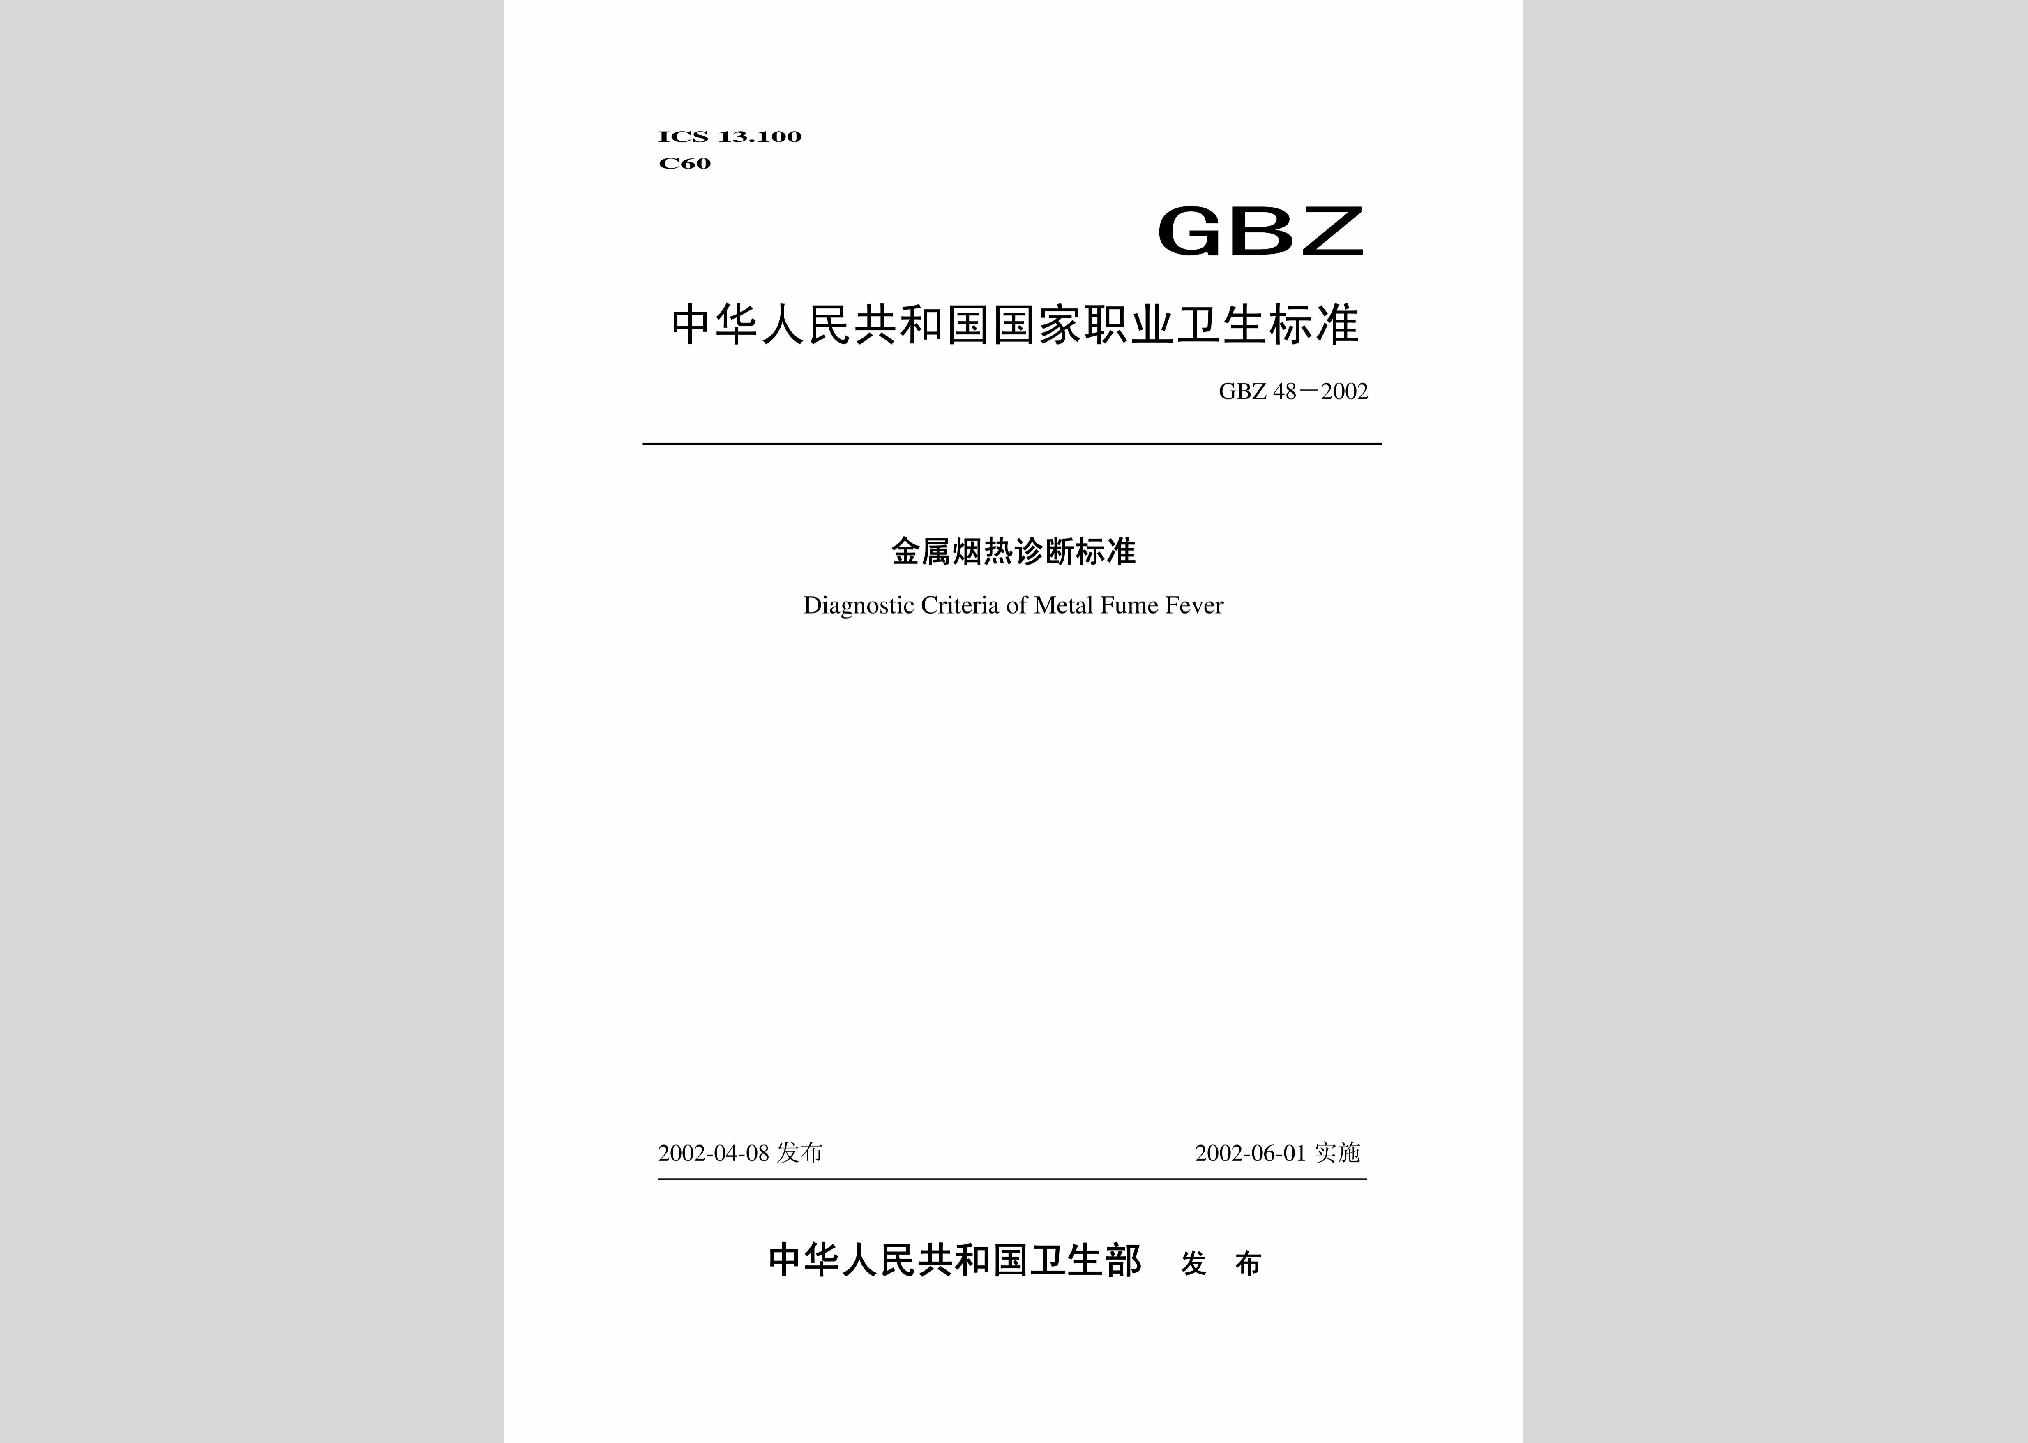 GBZ48-2002：金属烟热诊断标准